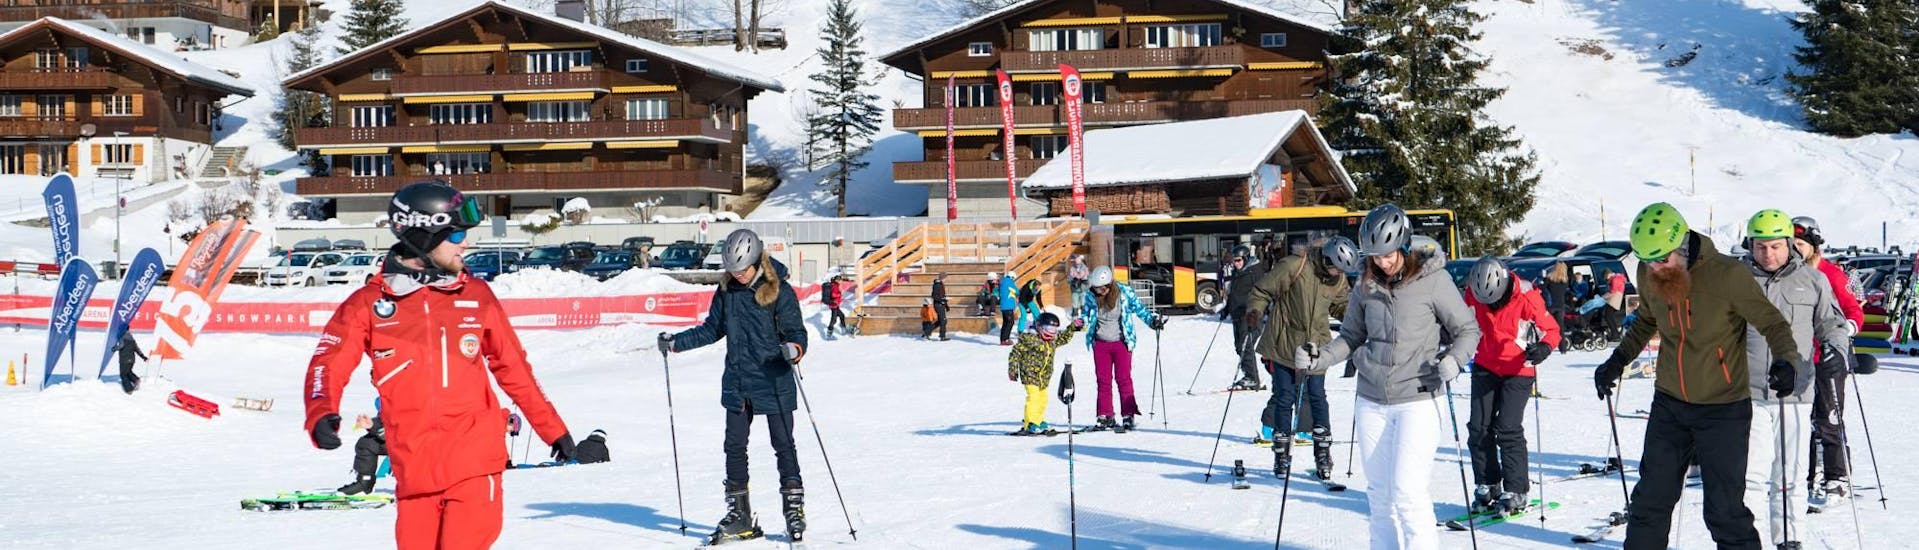 Volwassen skilessen voor beginners + skiverhuur en transfer vanaf Interlaken.